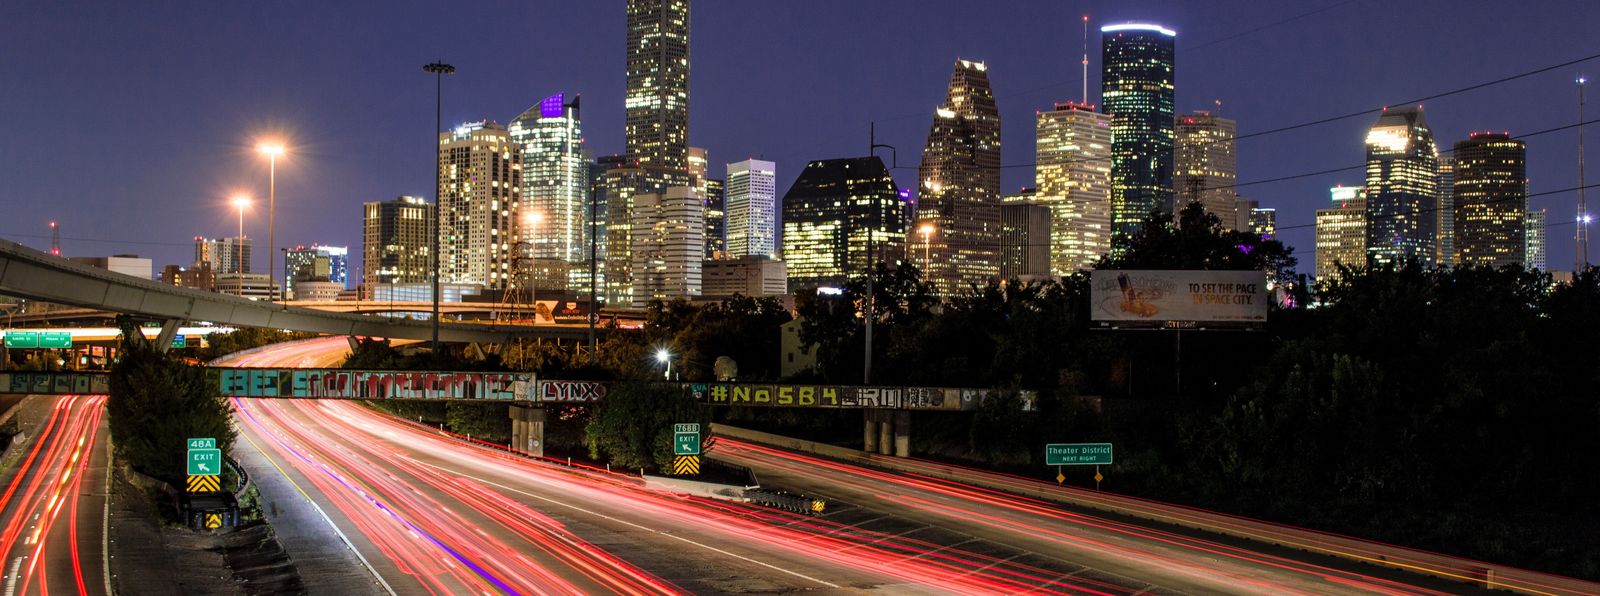 Houston, Texas - Photo by Kevin Hernandez on Unsplash